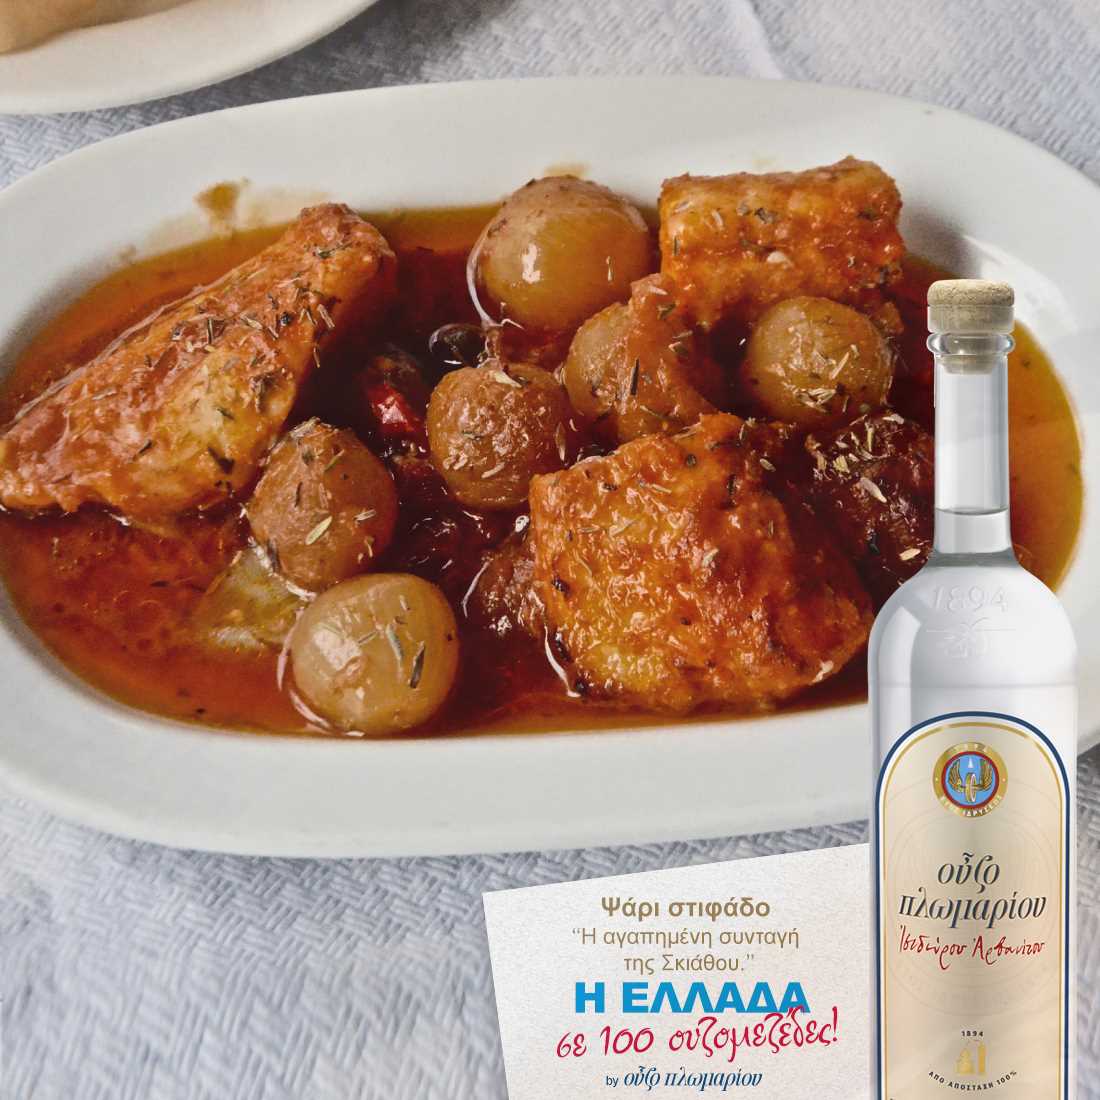 Ψάρι στιφάδο - Ουζομεζέδες - Greek Gastronomy Guide